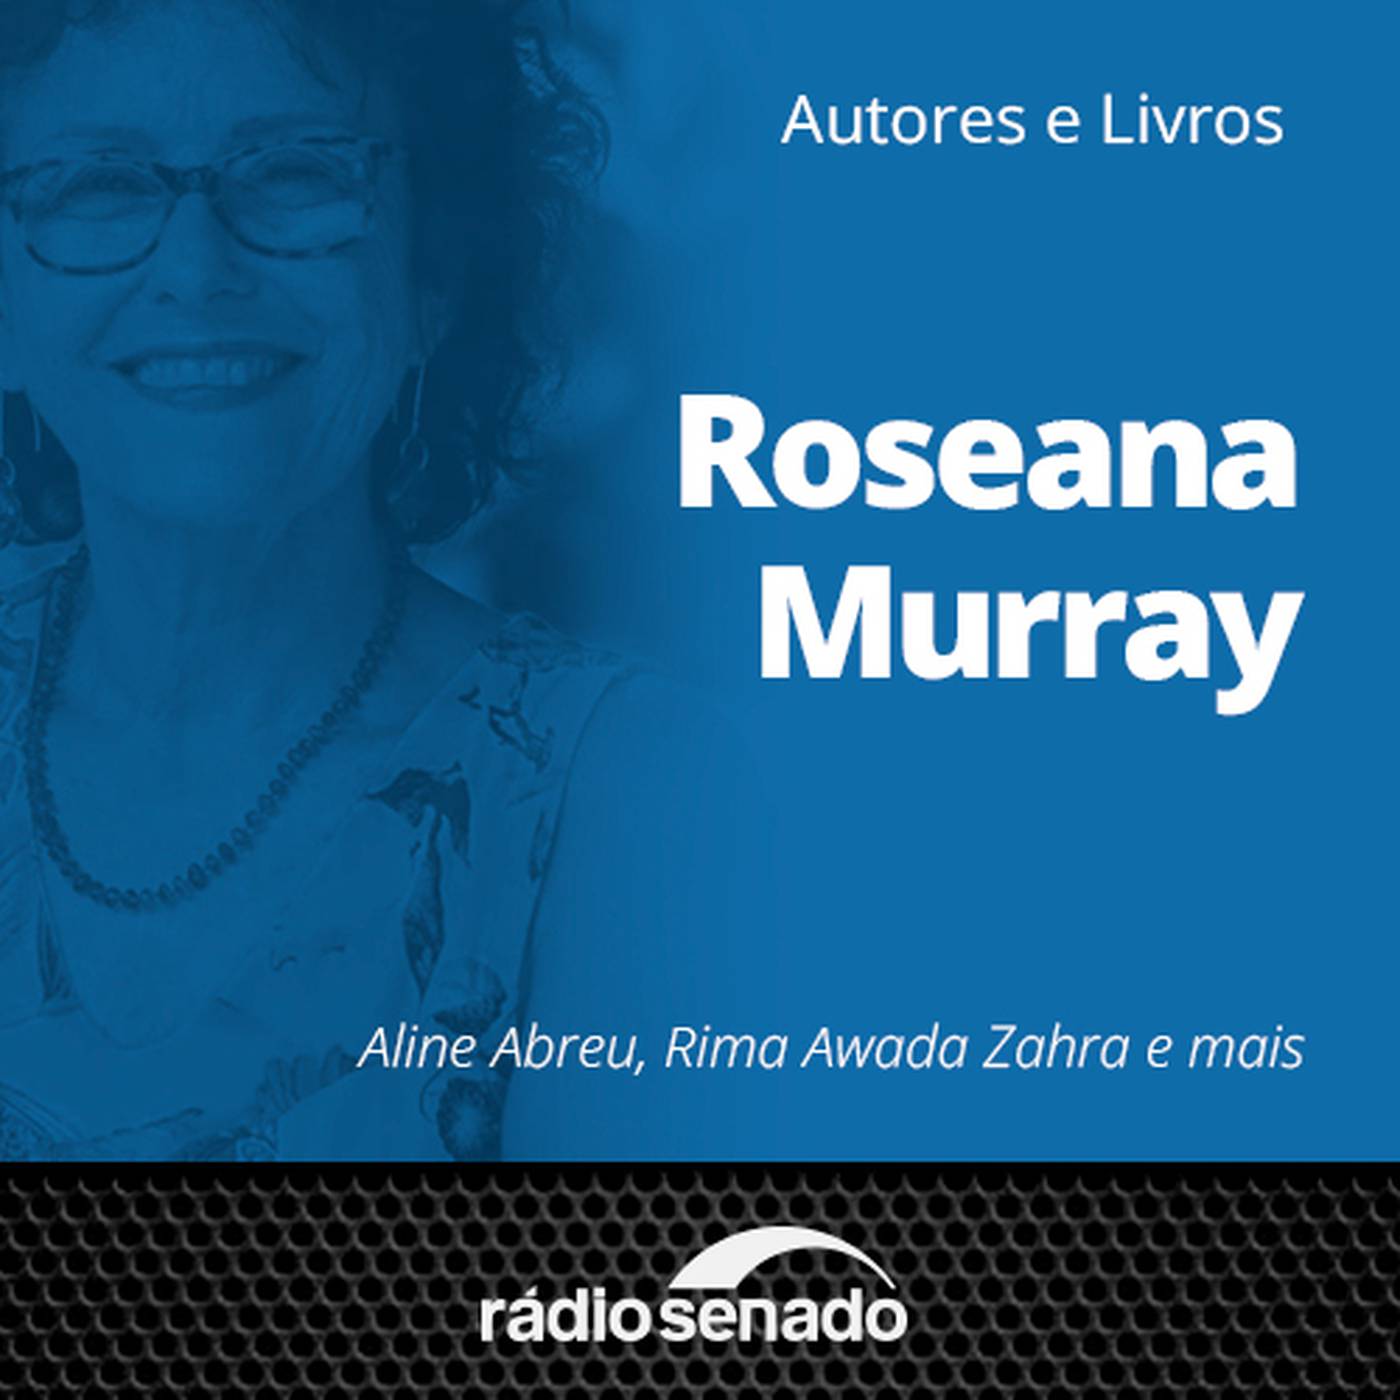 Autores e Livros homenageia Roseana Murray